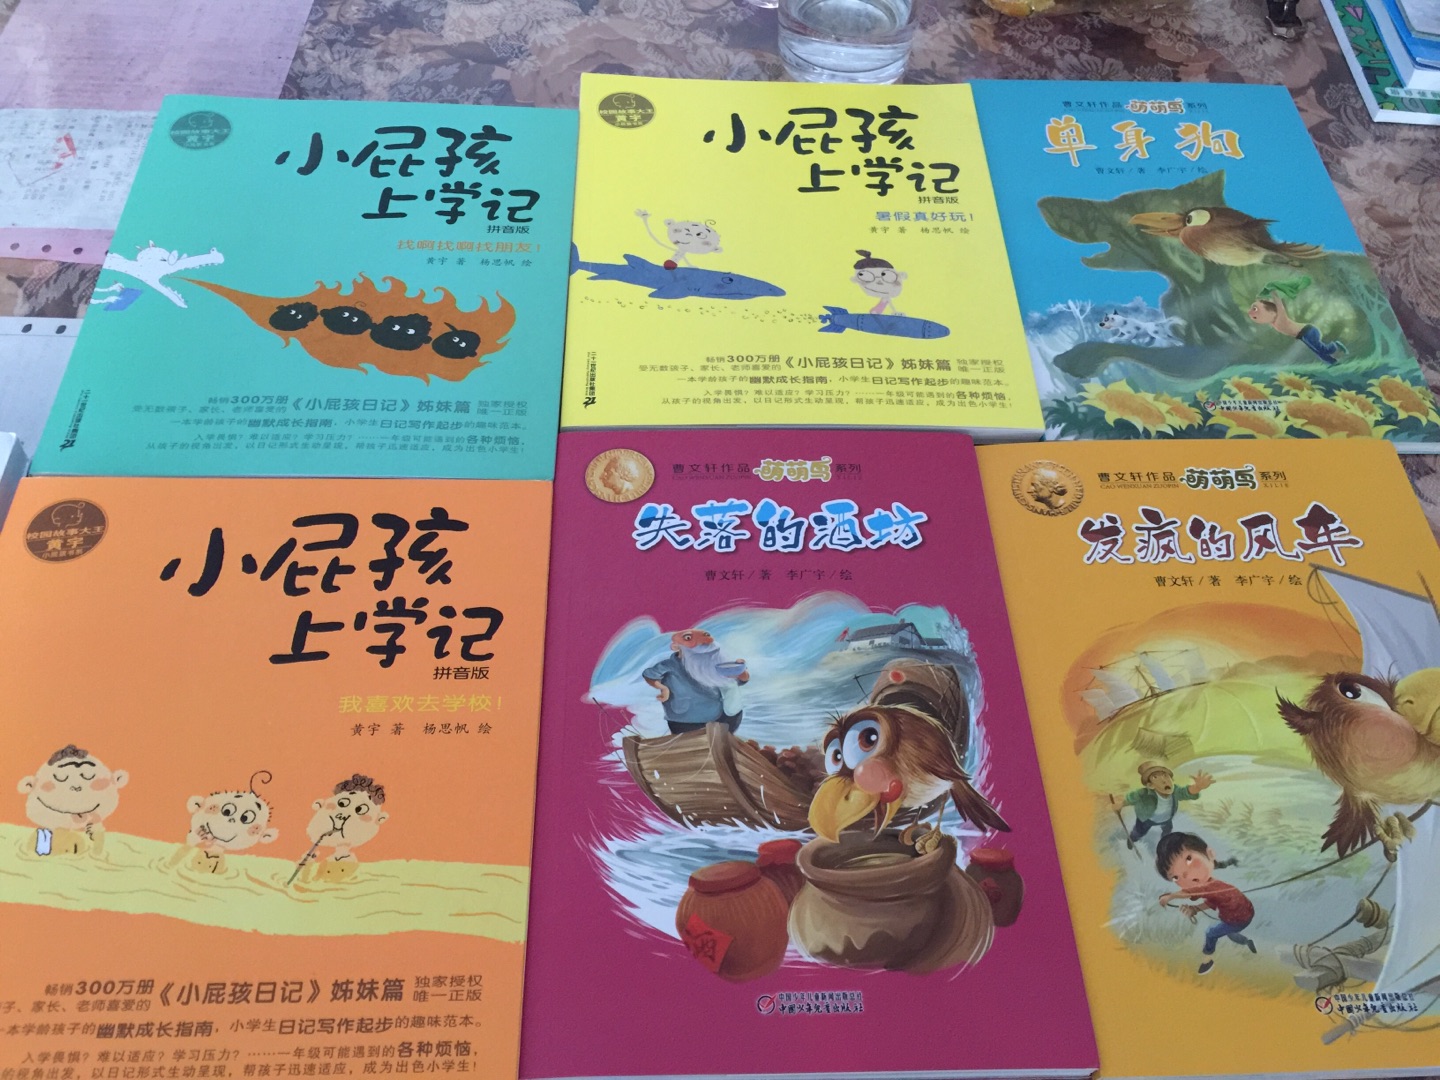 儿子五岁半，能独立看懂一些简单的书，这些书是我在新华书店看过后才买的，非常不错，适合小孩子，印图精美，文字简单，关键是价格非常美丽，希望儿子会非常喜欢。